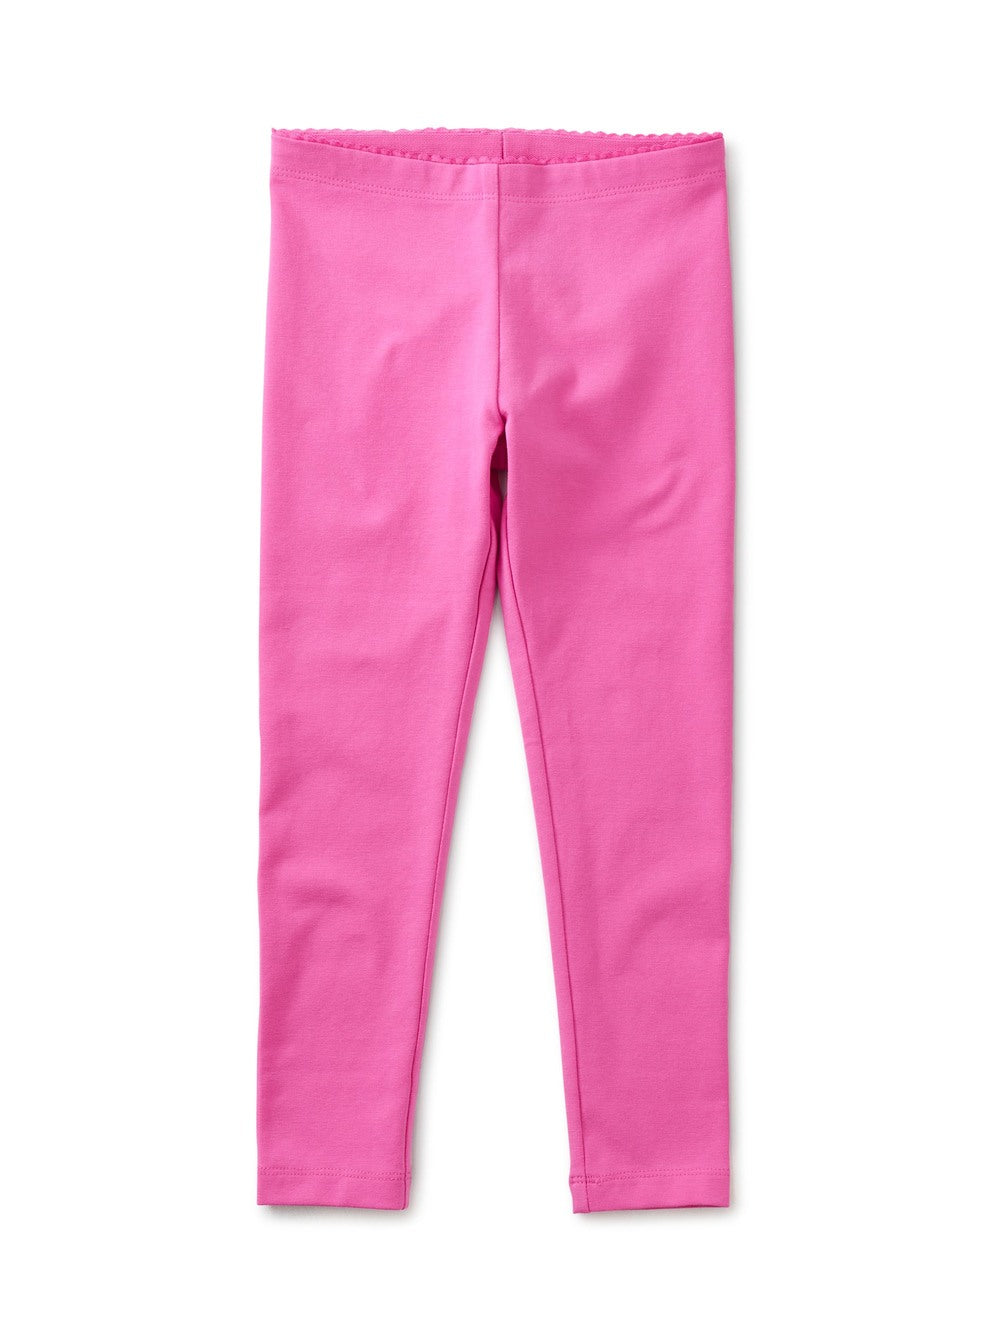 Solid Leggings in Carousel Pink